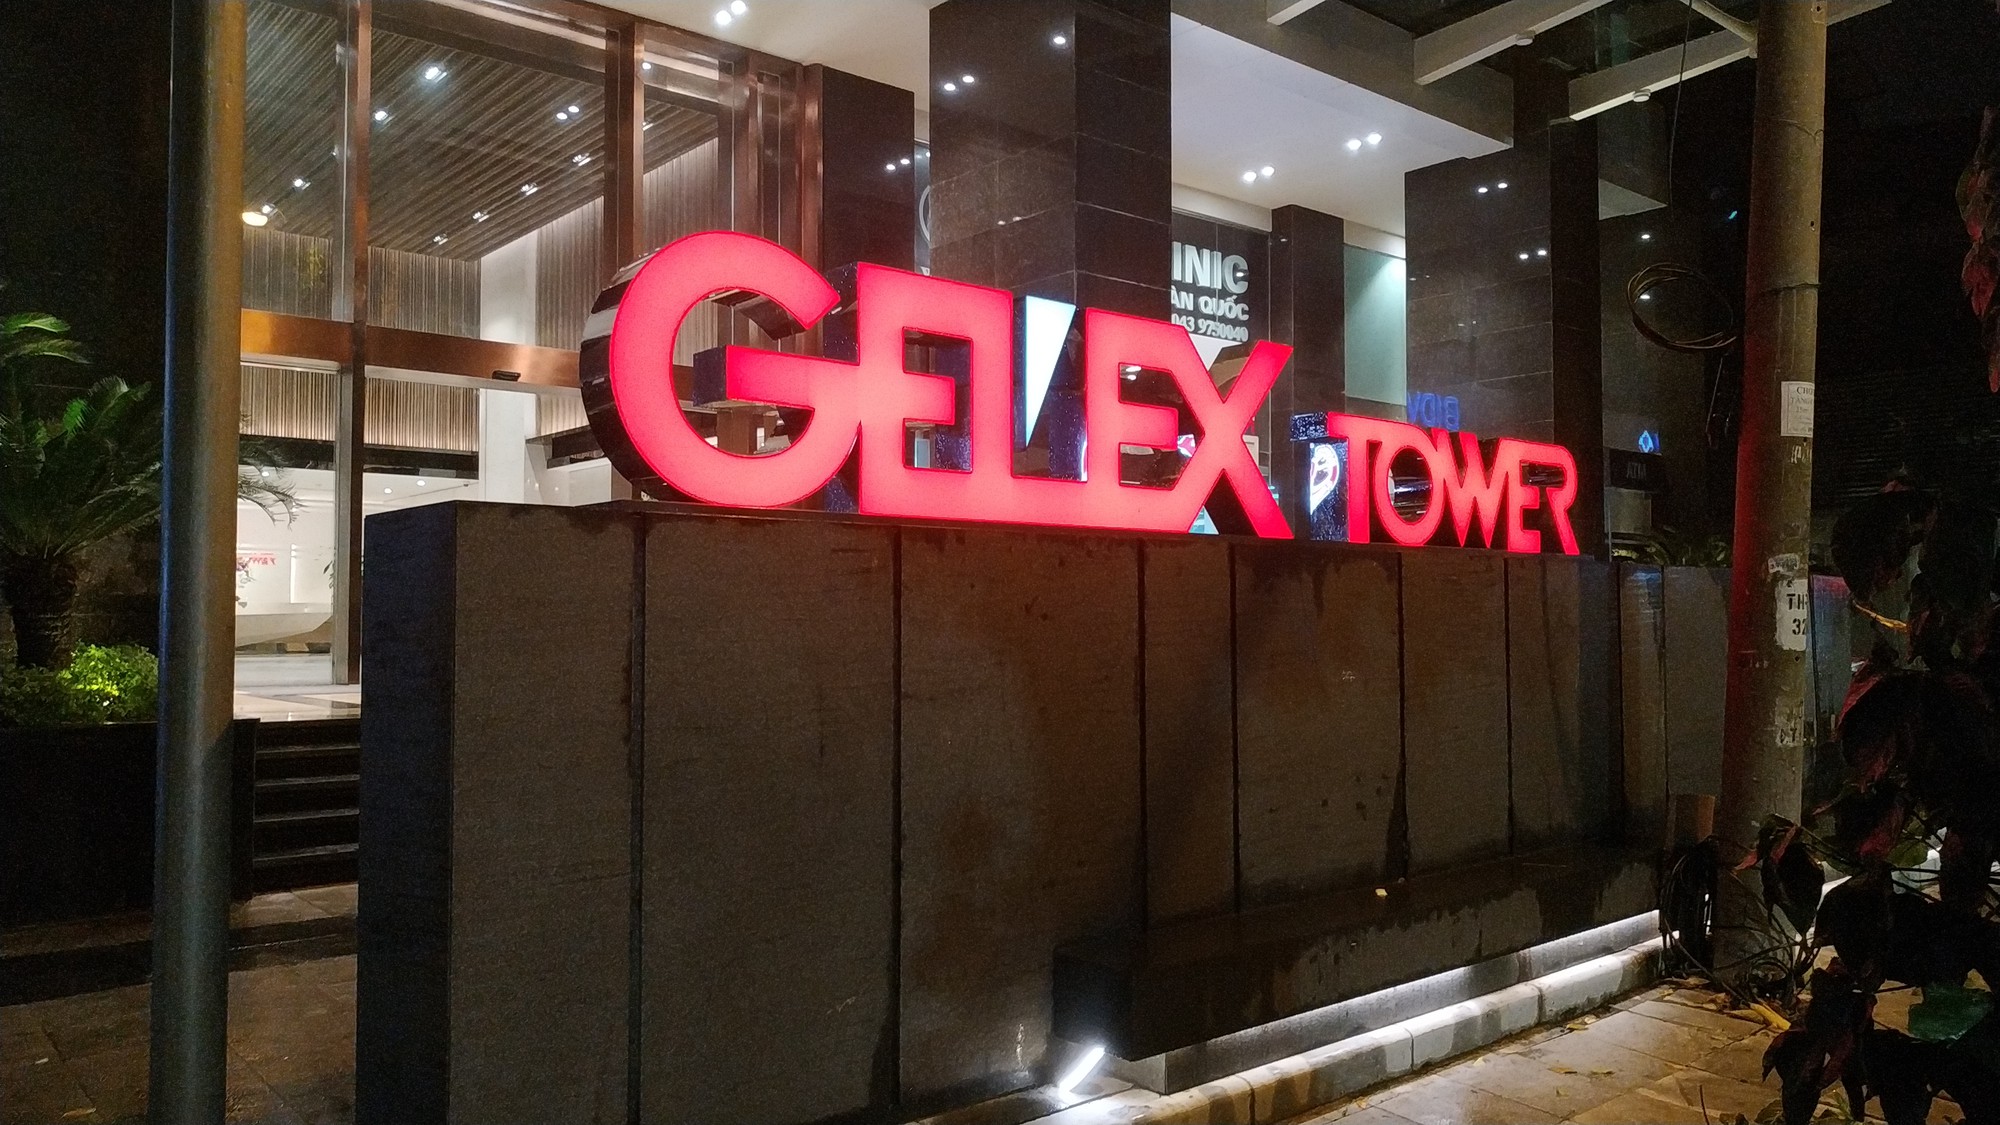 Gelex (GEX) tiếp tục muốn mua lại hơn 470 tỷ đồng trái phiếu trước hạn - Ảnh 1.